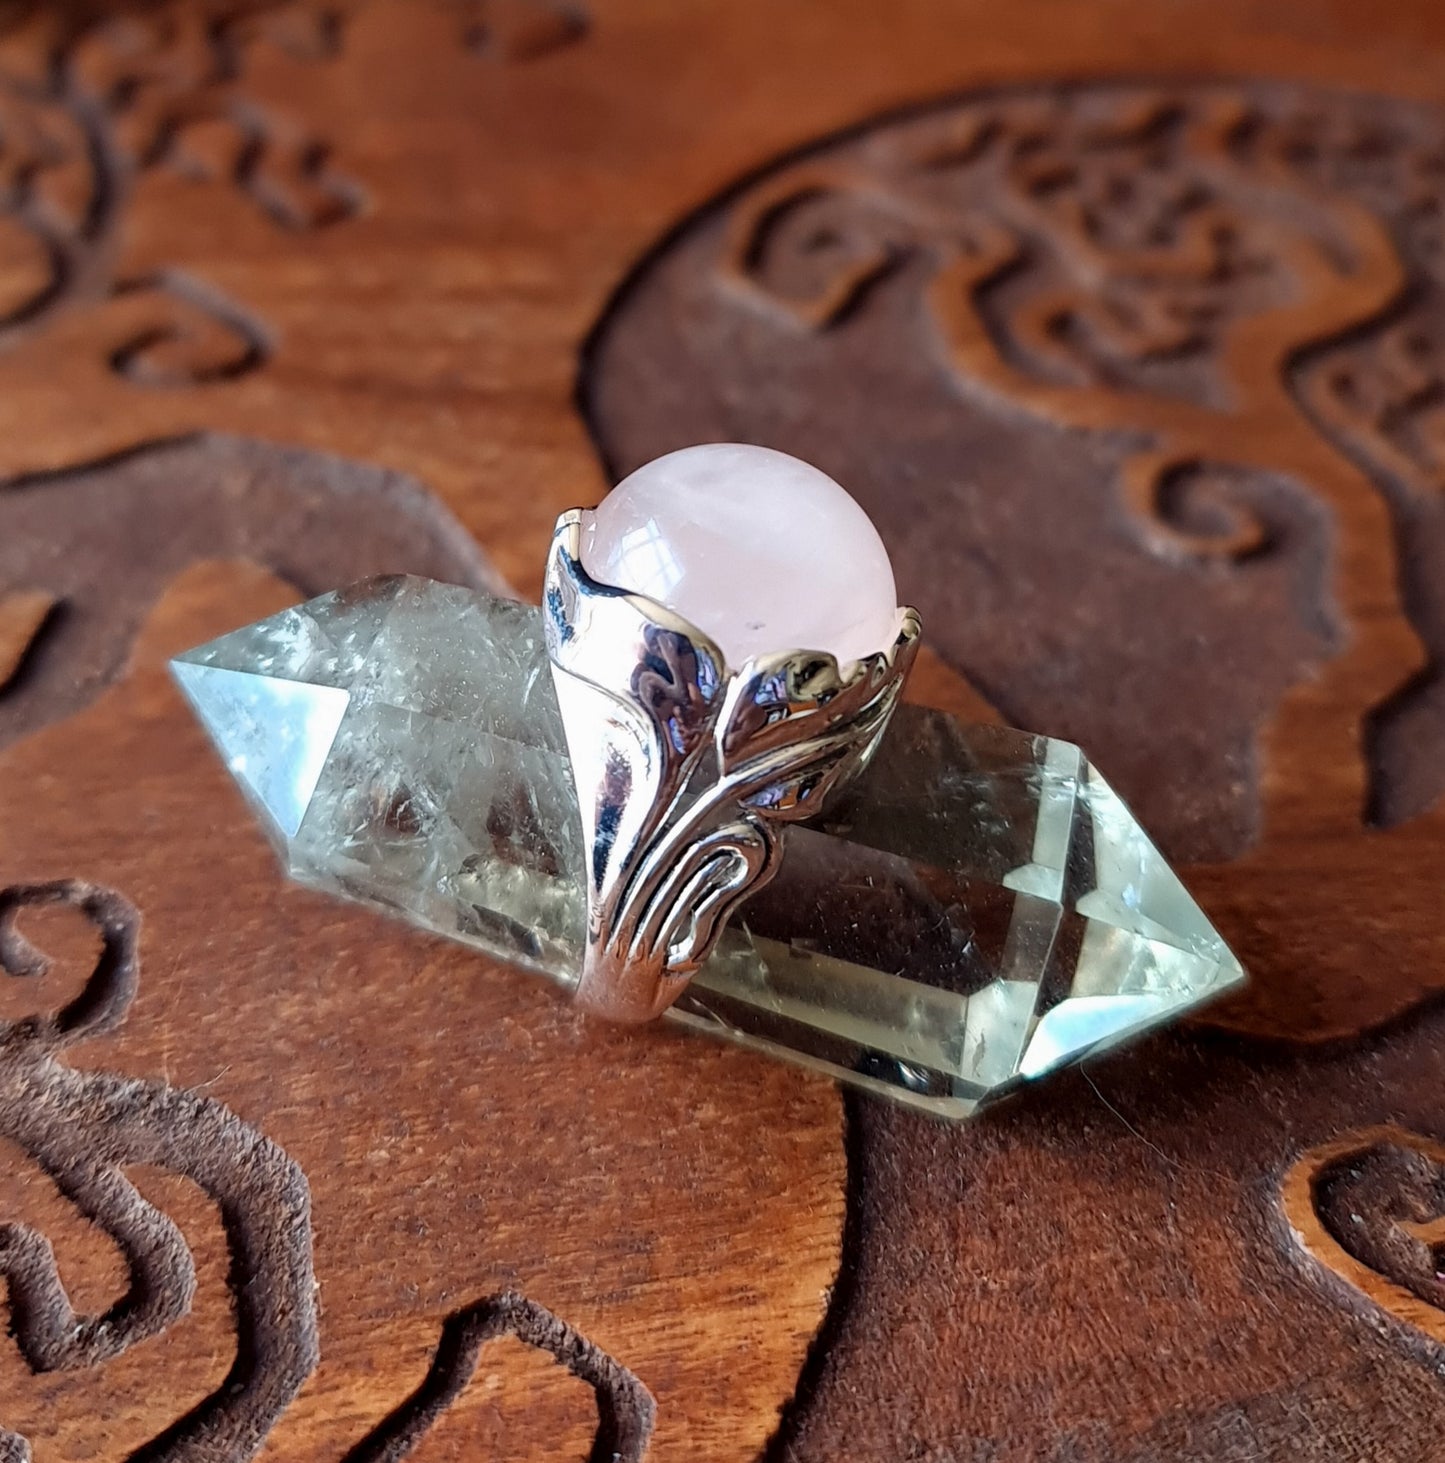 Rose Quartz Sterling Silver Leaf Ring